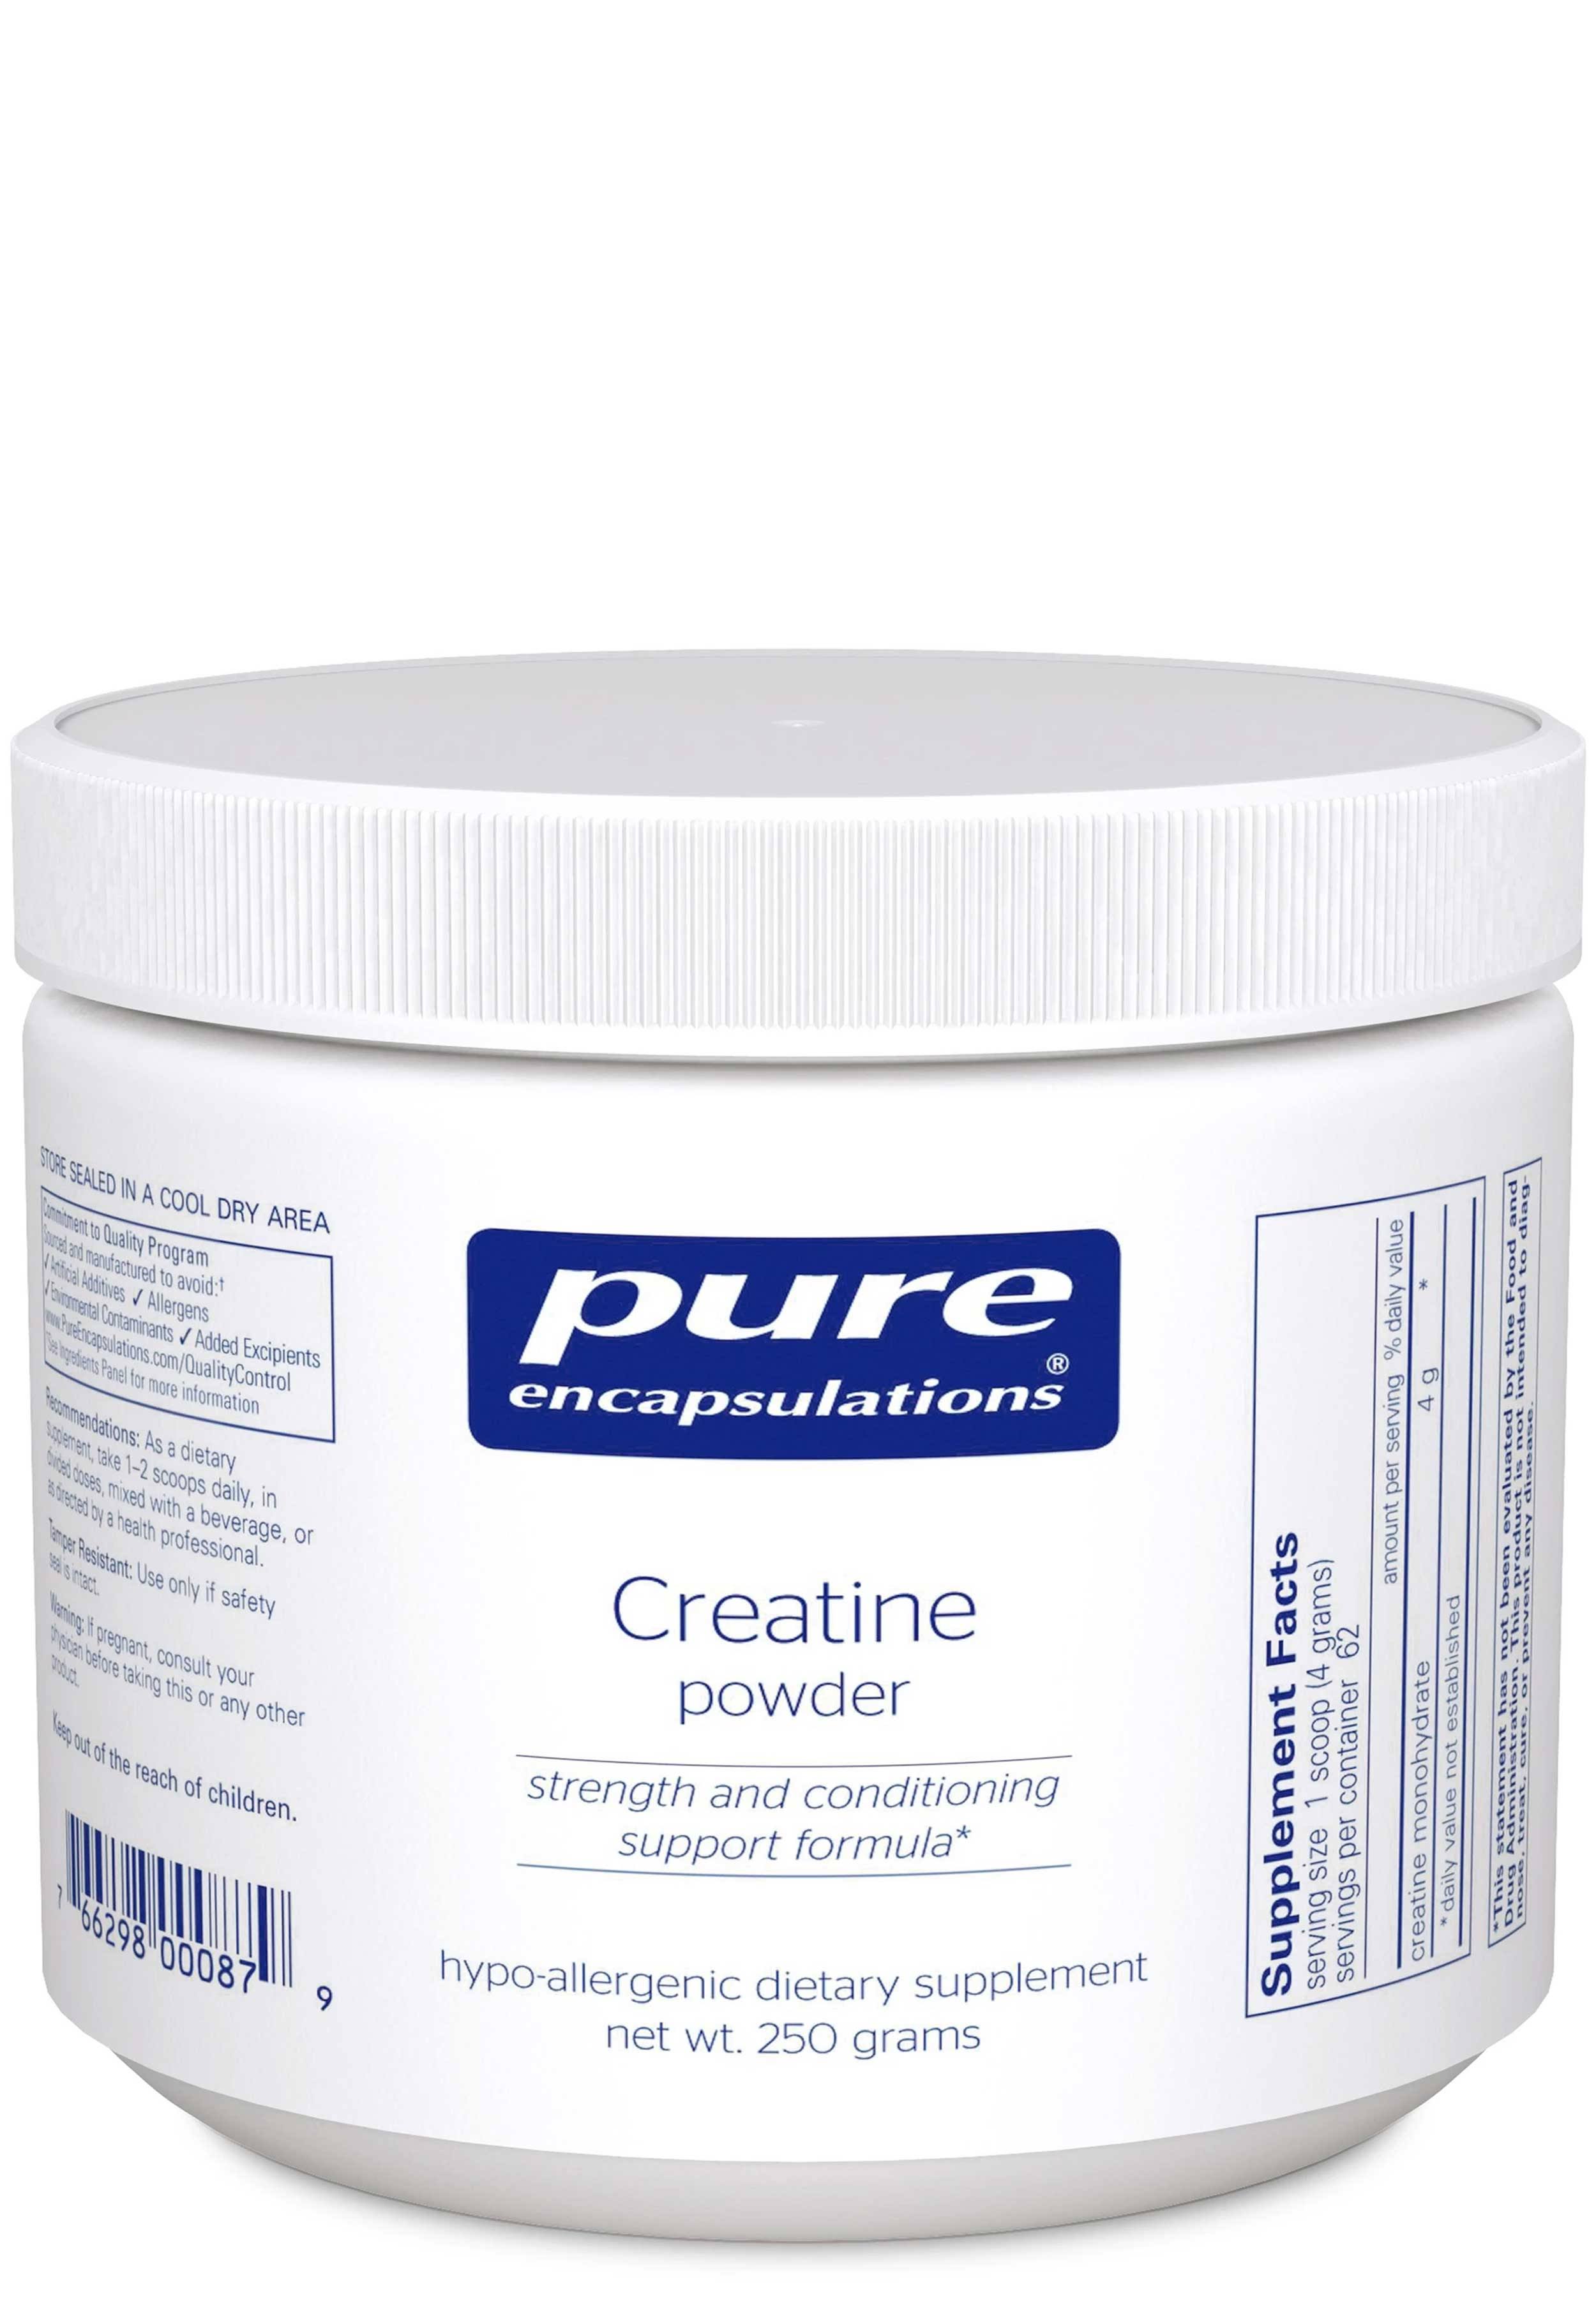 Pure Encapsulations Creatine Powder - 250g